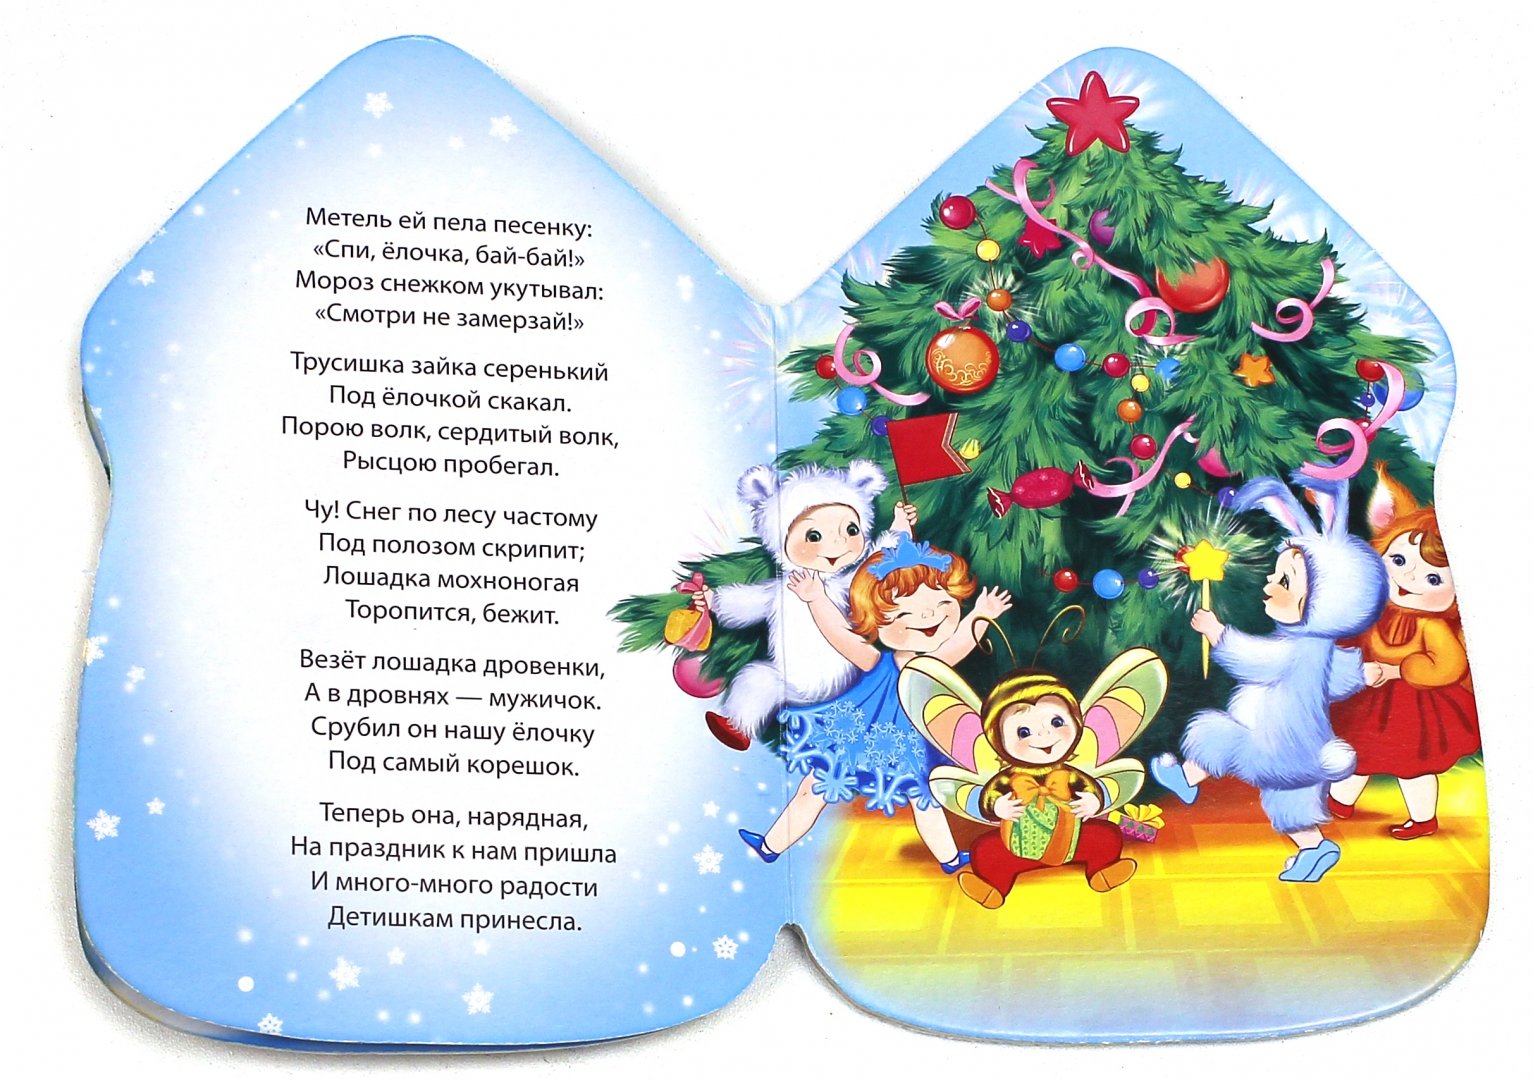 Гимн новому году. Новогодние песенки. Детские новогодние песенки. Новогодние песенки для детей. Тексты детских новогодних песенок для малышей.